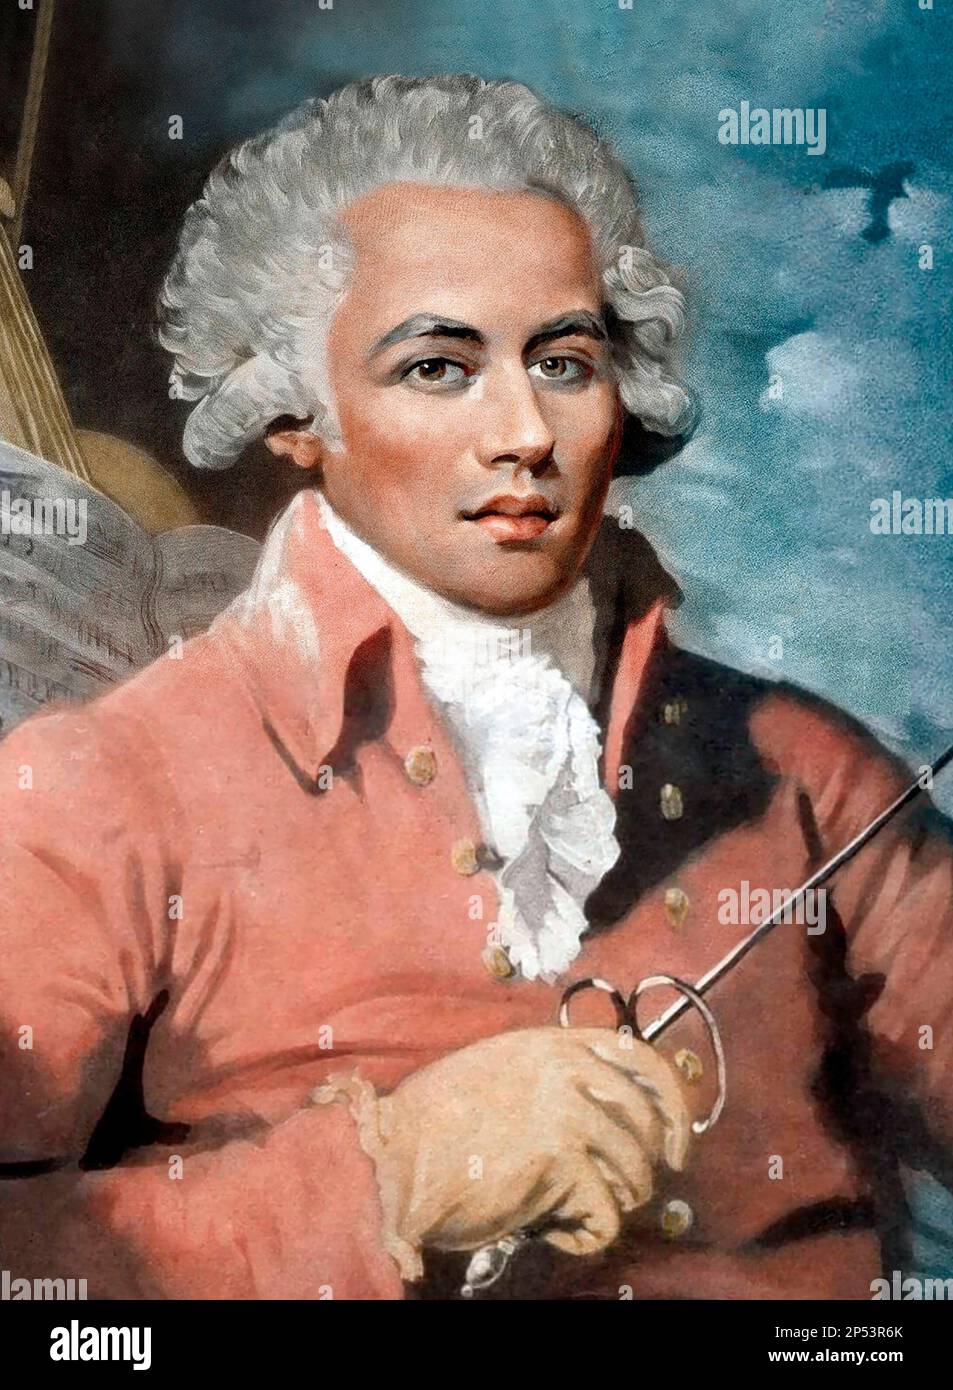 Chevalier de Saint-Georges. Portrait du violoniste et compositeur français Joseph Bologne, Chevalier de Saint-Georges (1745-1799), peinture de Mather Brown, 1789 Banque D'Images